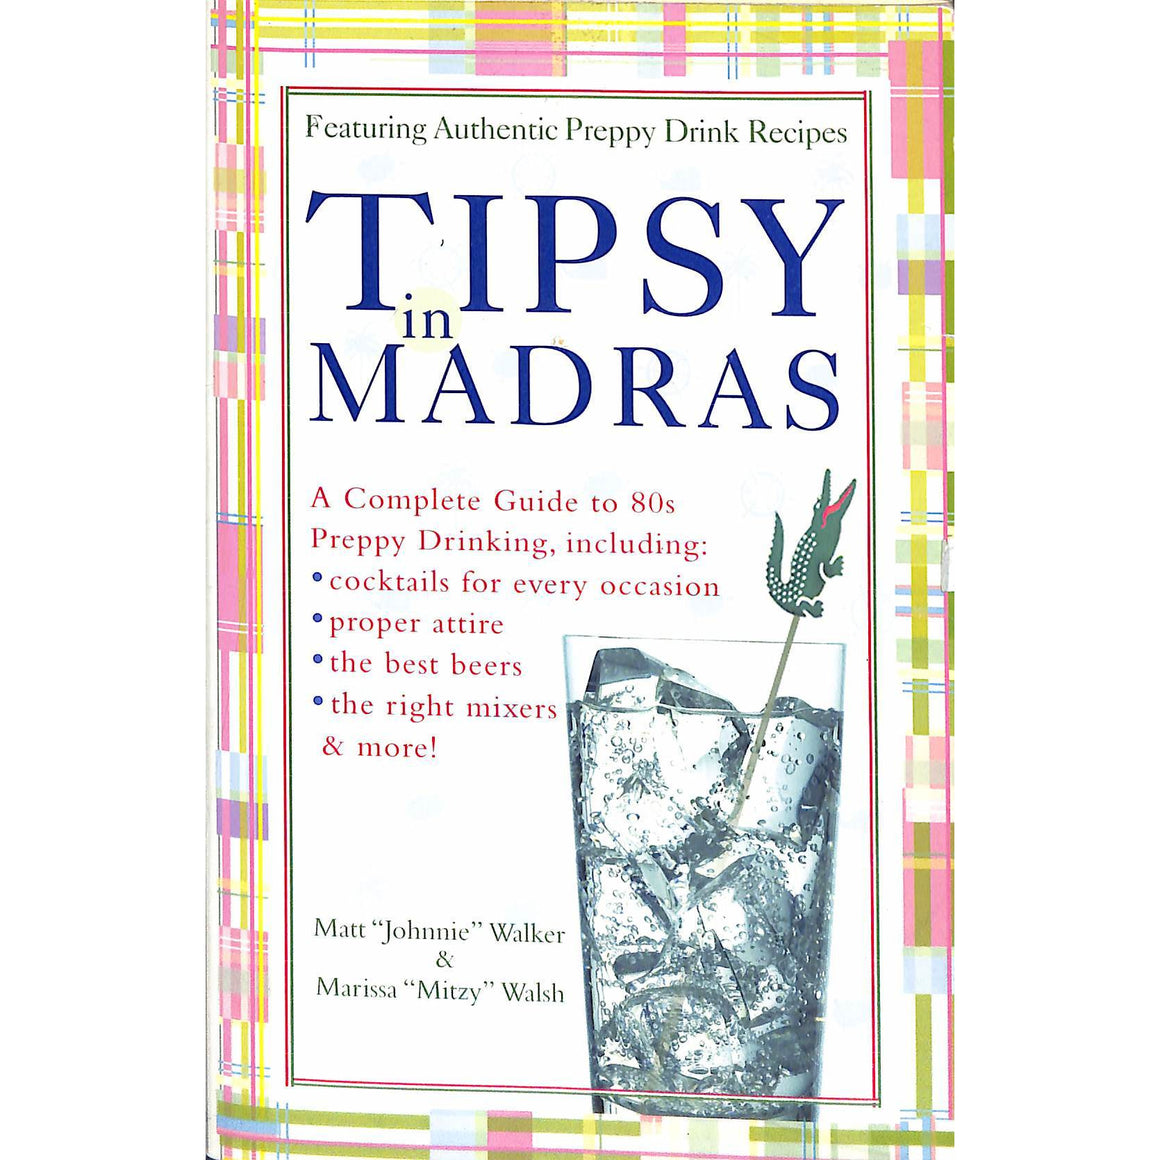 Tipsy Madras